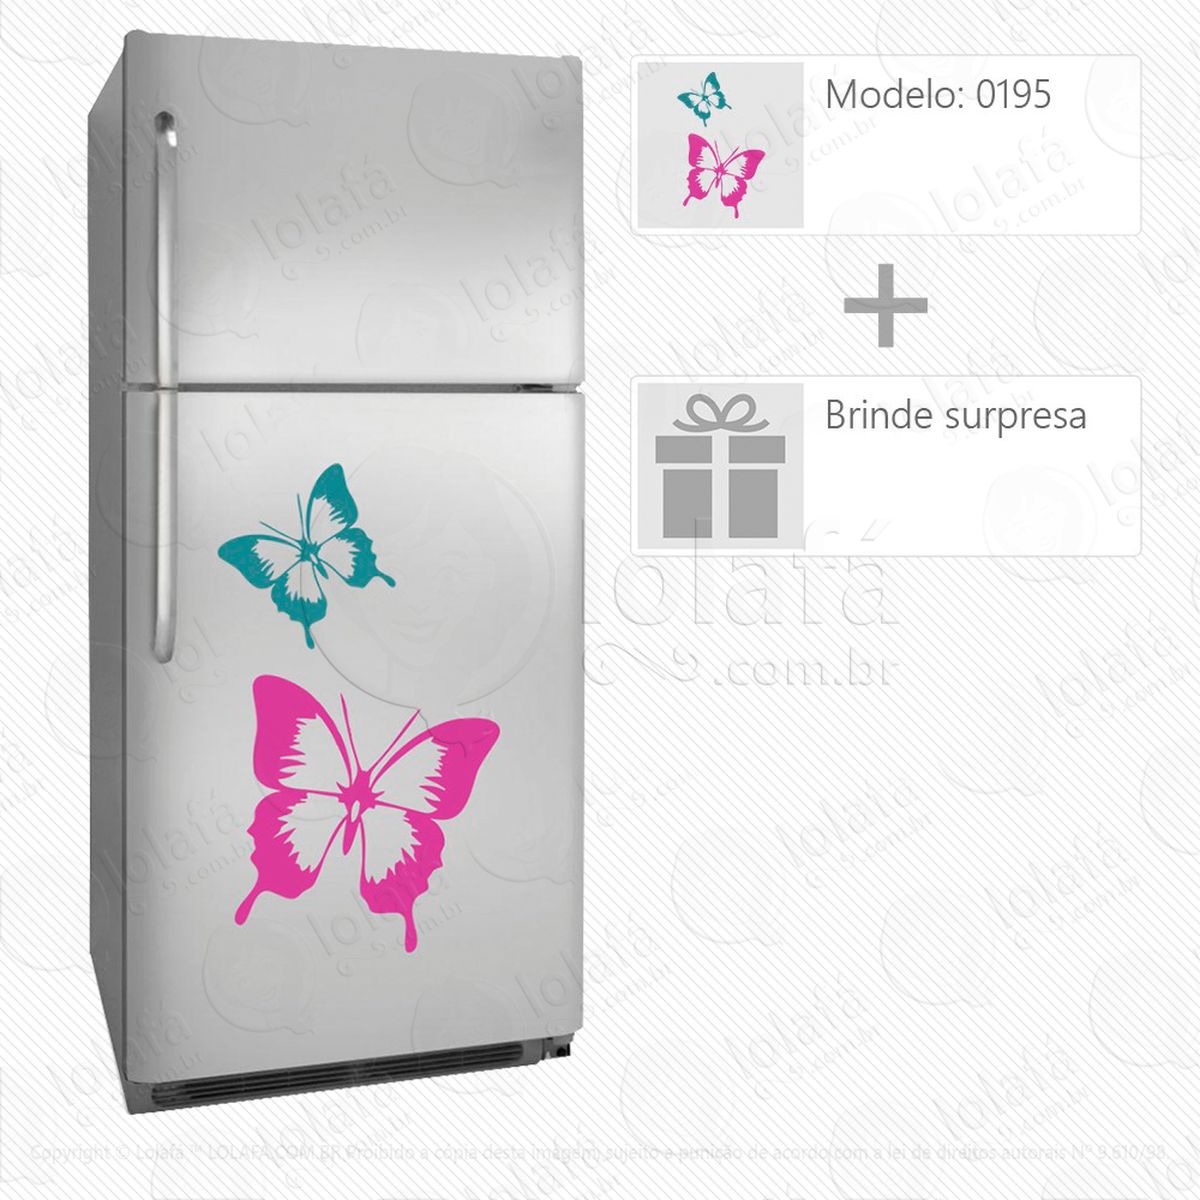 borboletas adesivo para geladeira e frigobar - mod:195